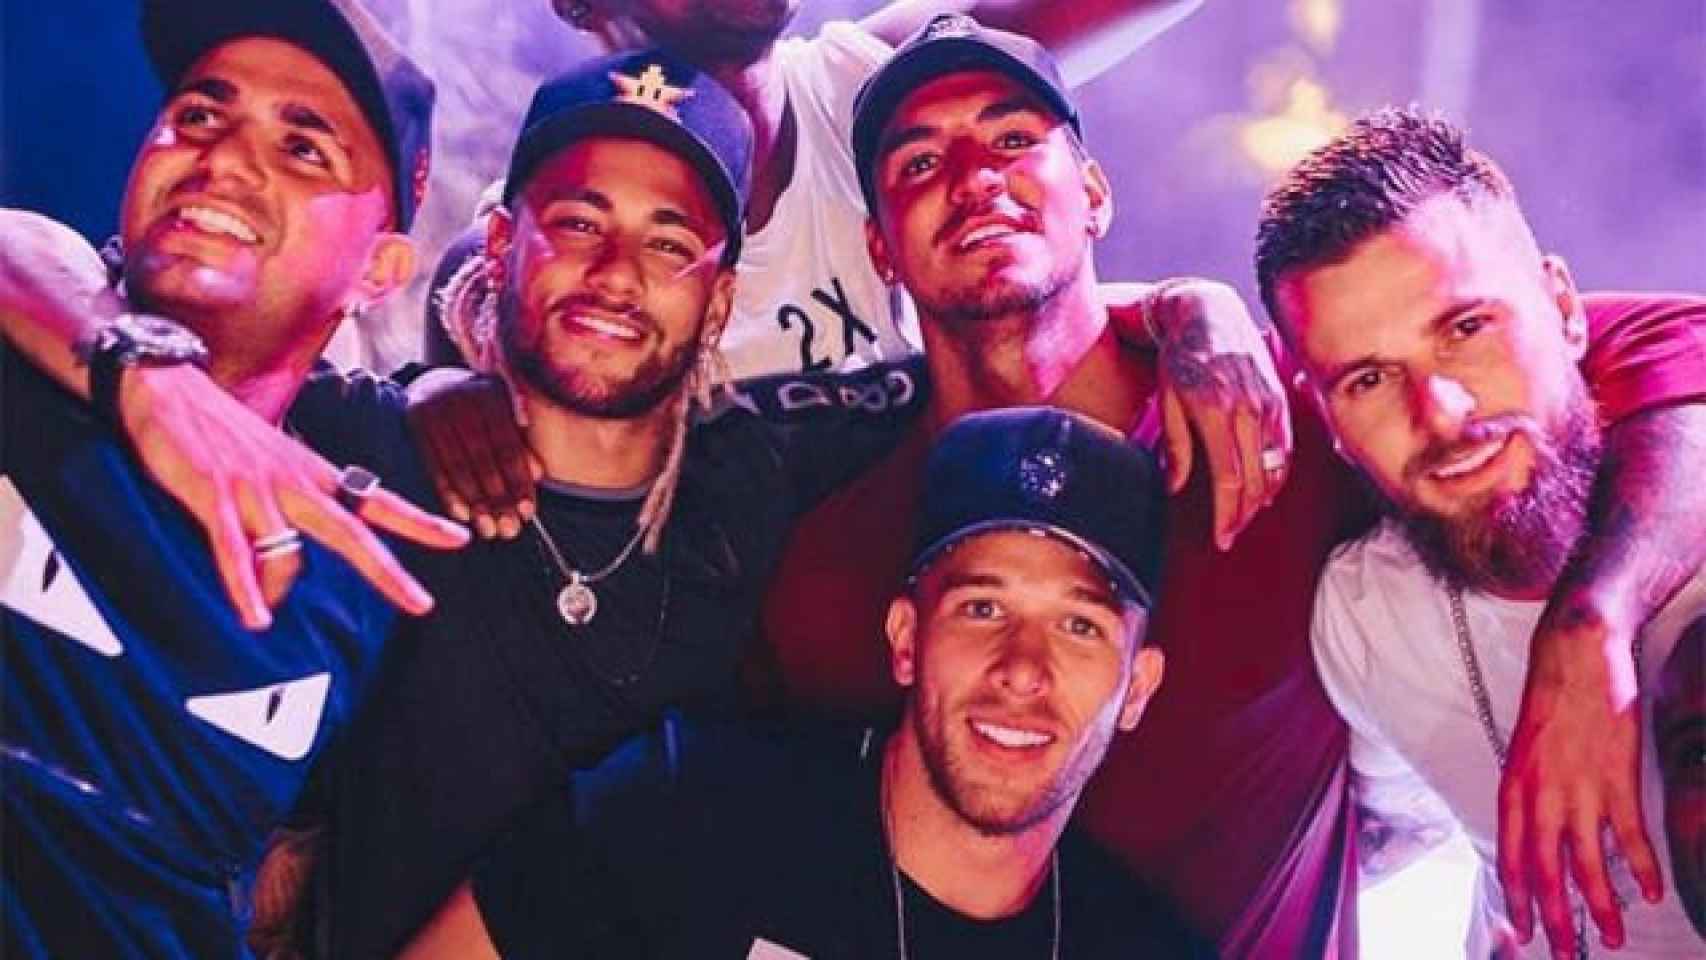 Neymar, Melo y unos amigos de fiesta en Brasile / INSTAGRAM